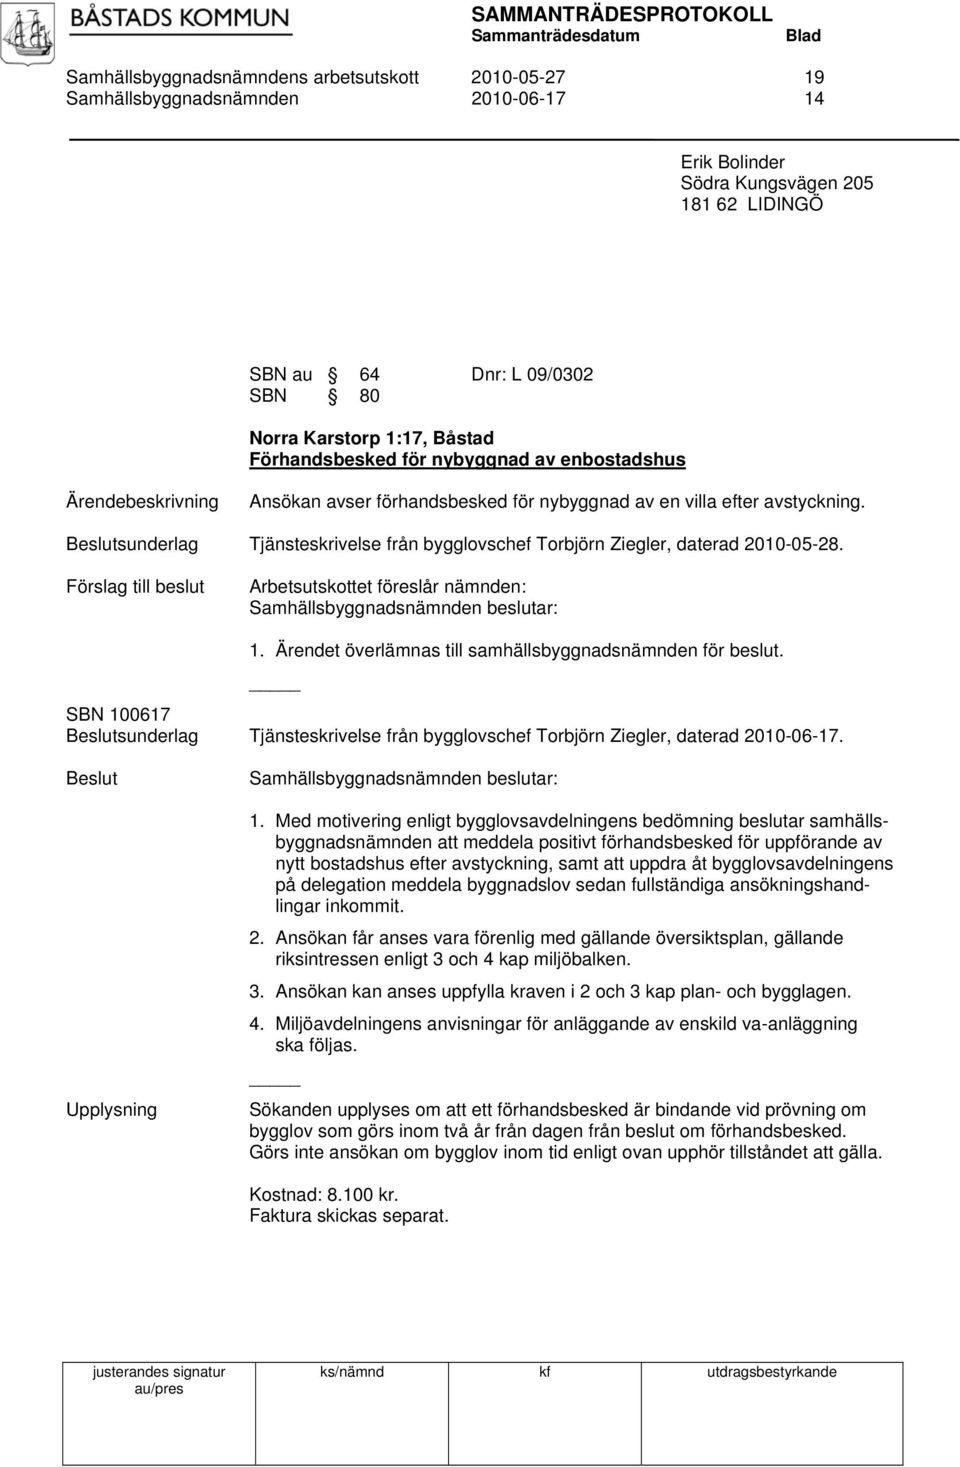 sunderlag Tjänsteskrivelse från bygglovschef Torbjörn Ziegler, daterad 2010-05-28. Förslag till beslut Arbetsutskottet föreslår nämnden: 1. Ärendet överlämnas till samhällsbyggnadsnämnden för beslut.